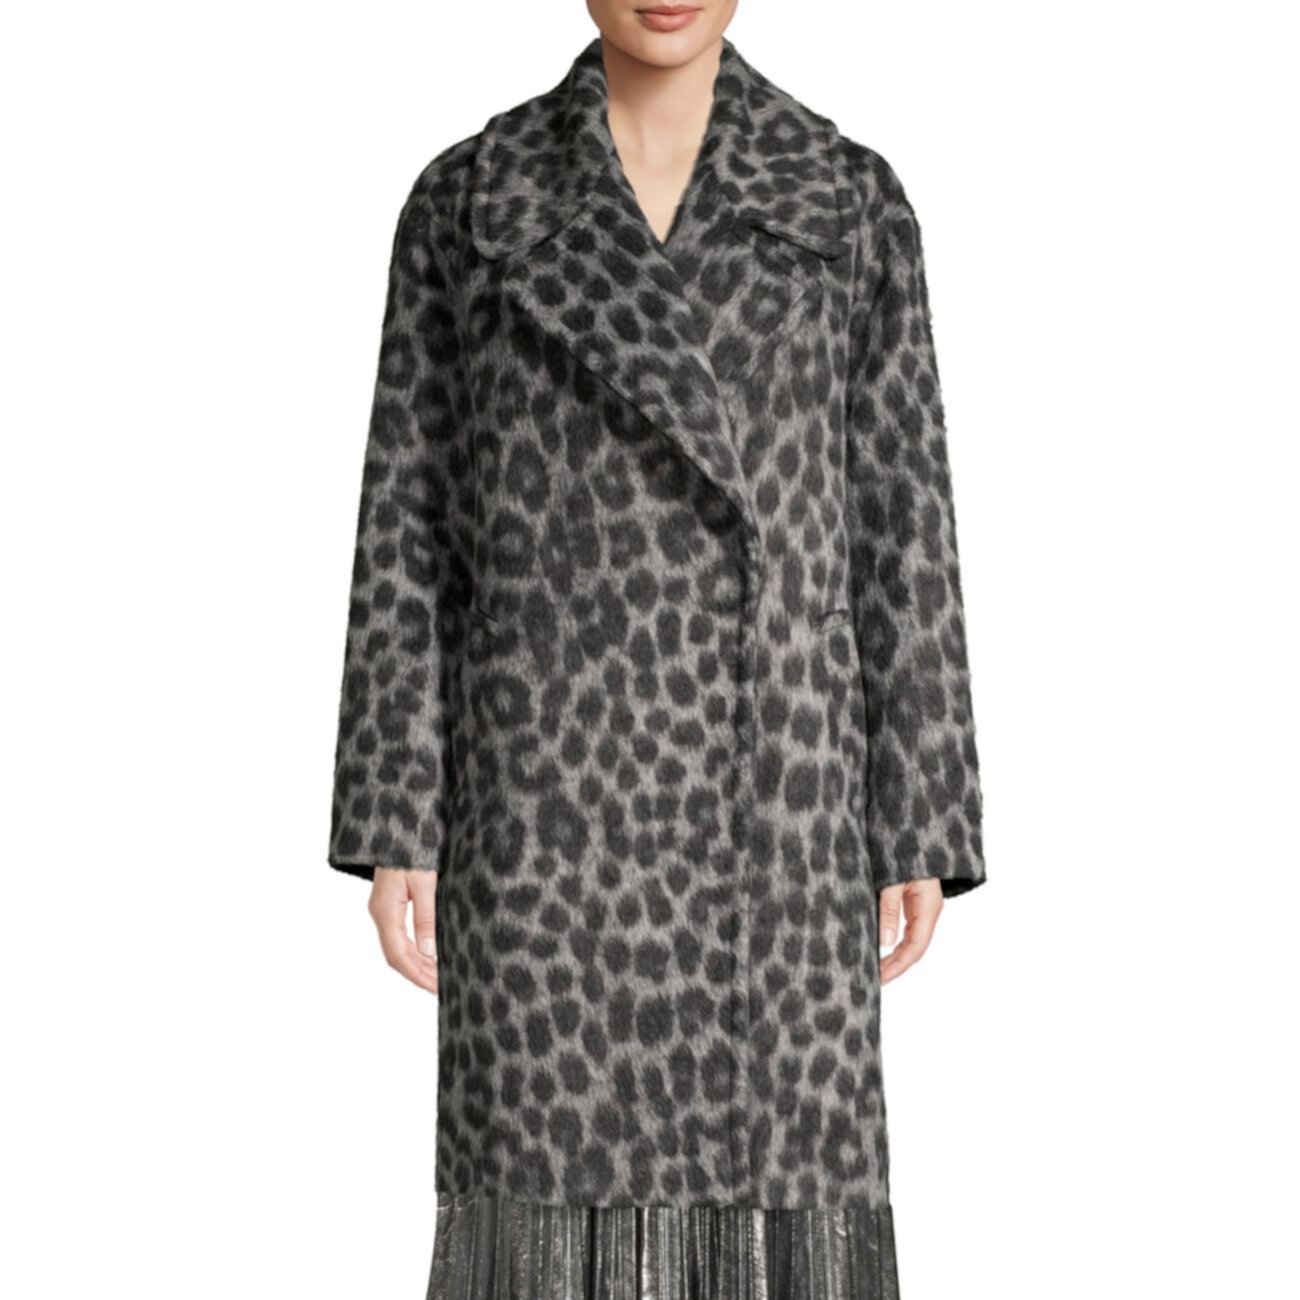 Жаккардовое пальто-кокон с леопардовым принтом Michael Kors